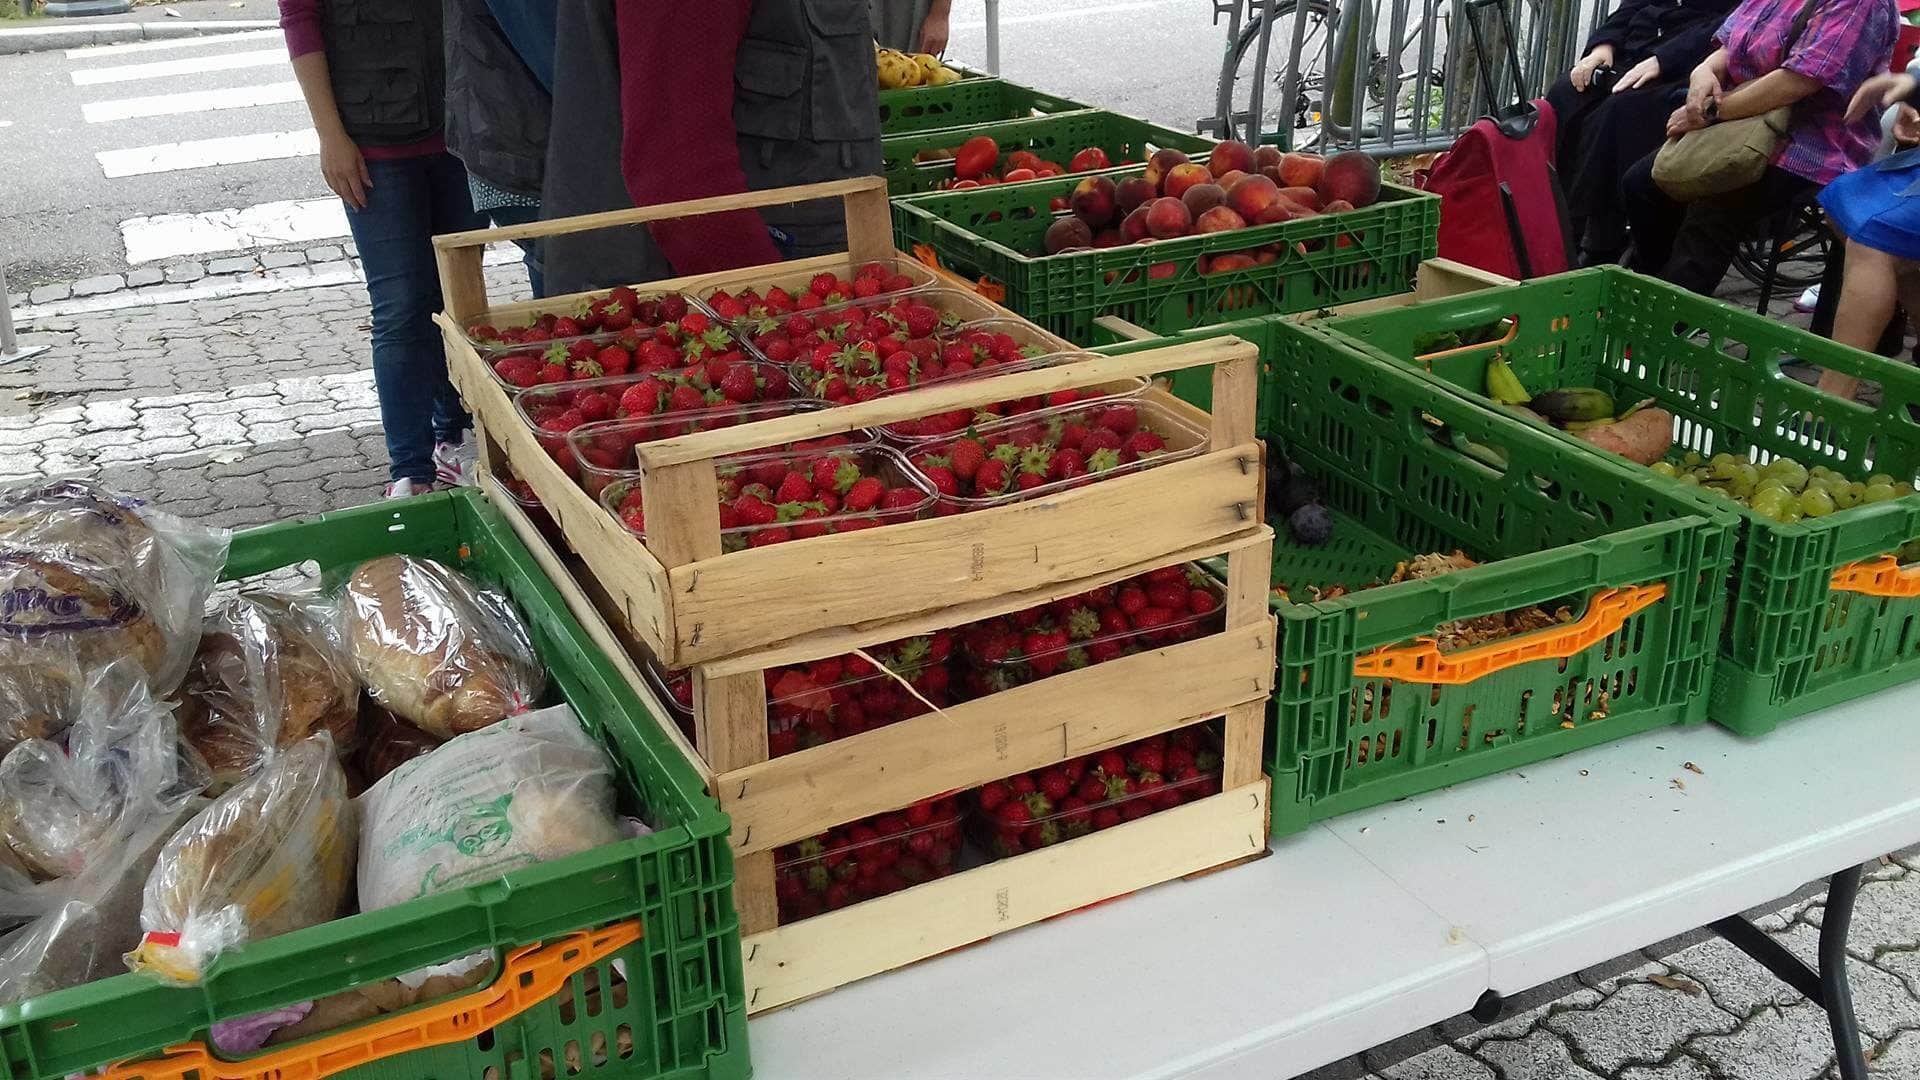 Depuis deux ans, la Tente des Glaneurs récolte les invendus du marché de la Marne, parfois jusqu'à 200kg de nourriture, pour les redistribuer gratuitement (Photo DL/Rue 89 Strasbourg/cc)